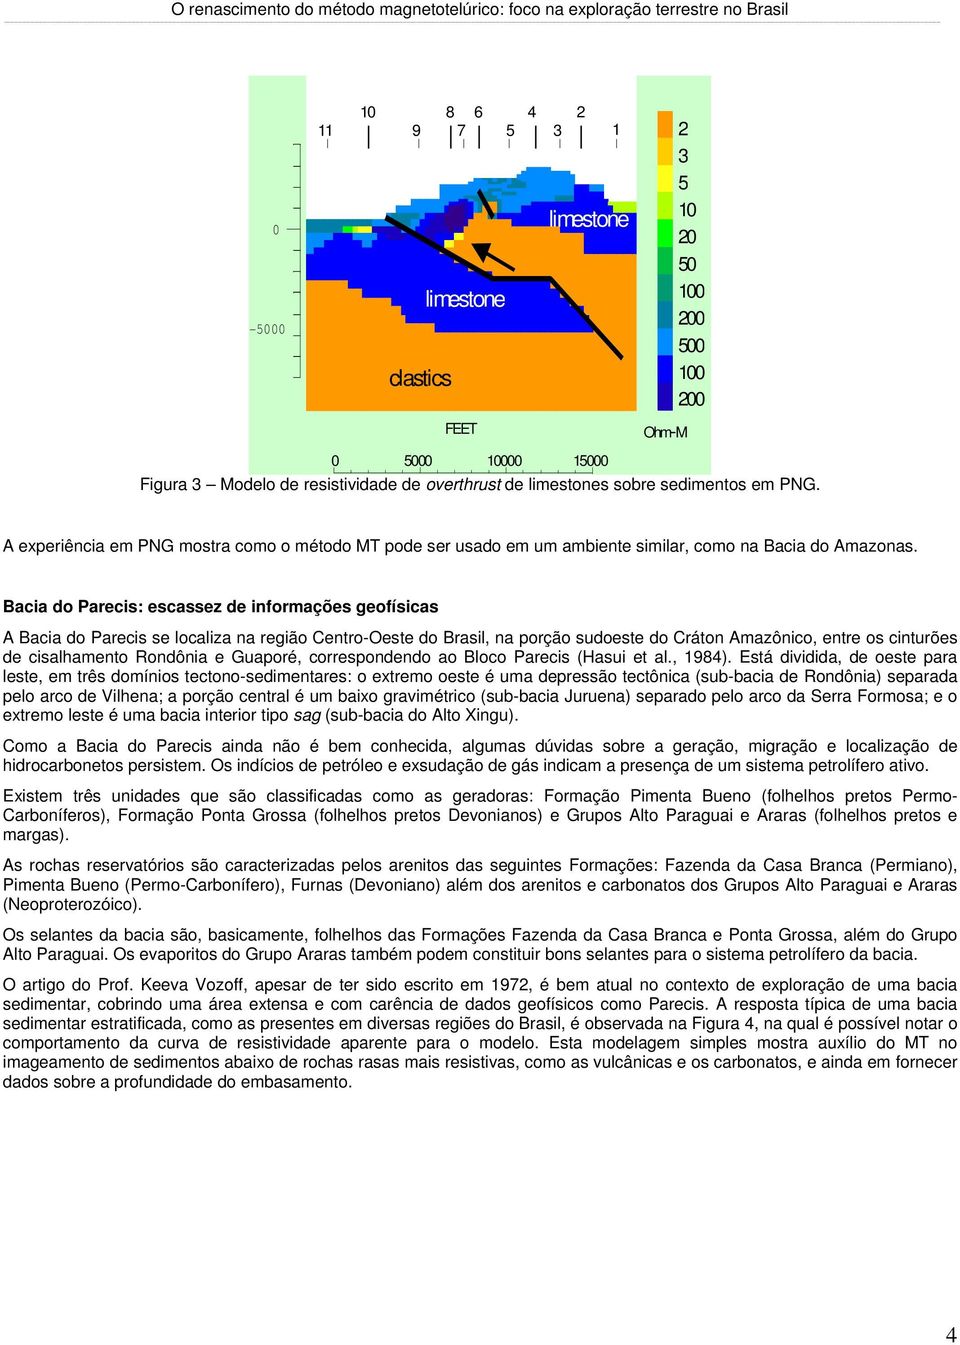 Bacia do Parecis: escassez de informações geofísicas A Bacia do Parecis se localiza na região Centro-Oeste do Brasil, na porção sudoeste do Cráton Amazônico, entre os cinturões de cisalhamento